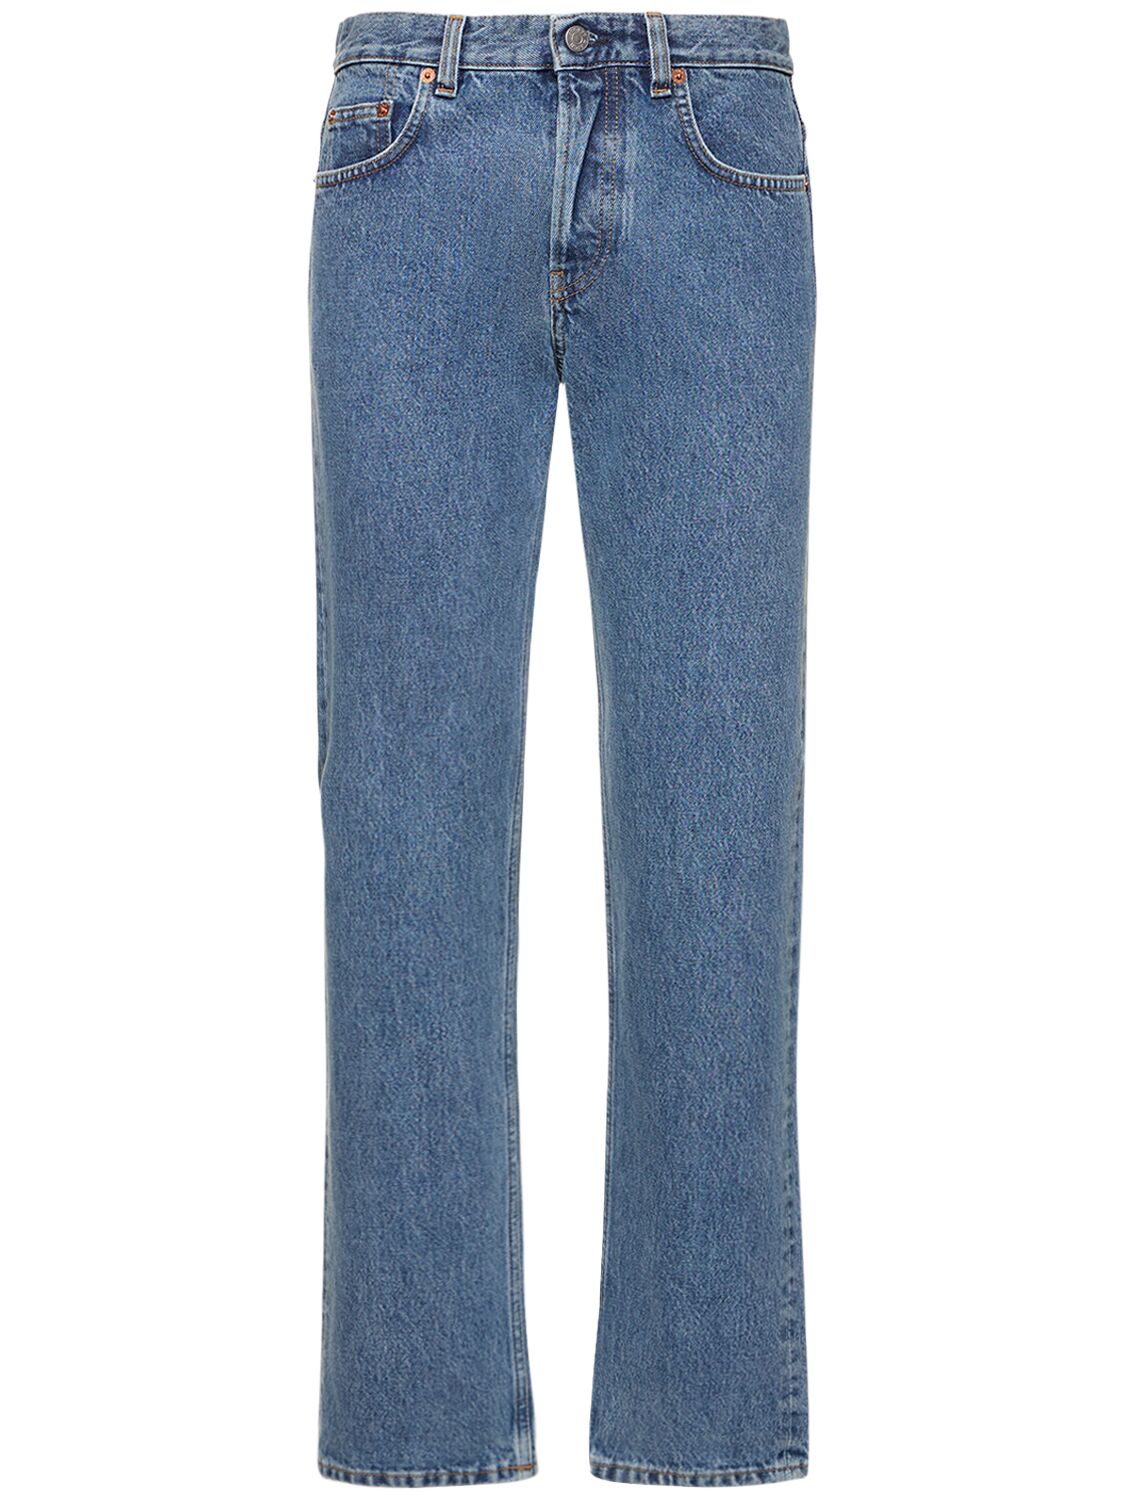 Image of Vintage Fit Denim Jeans